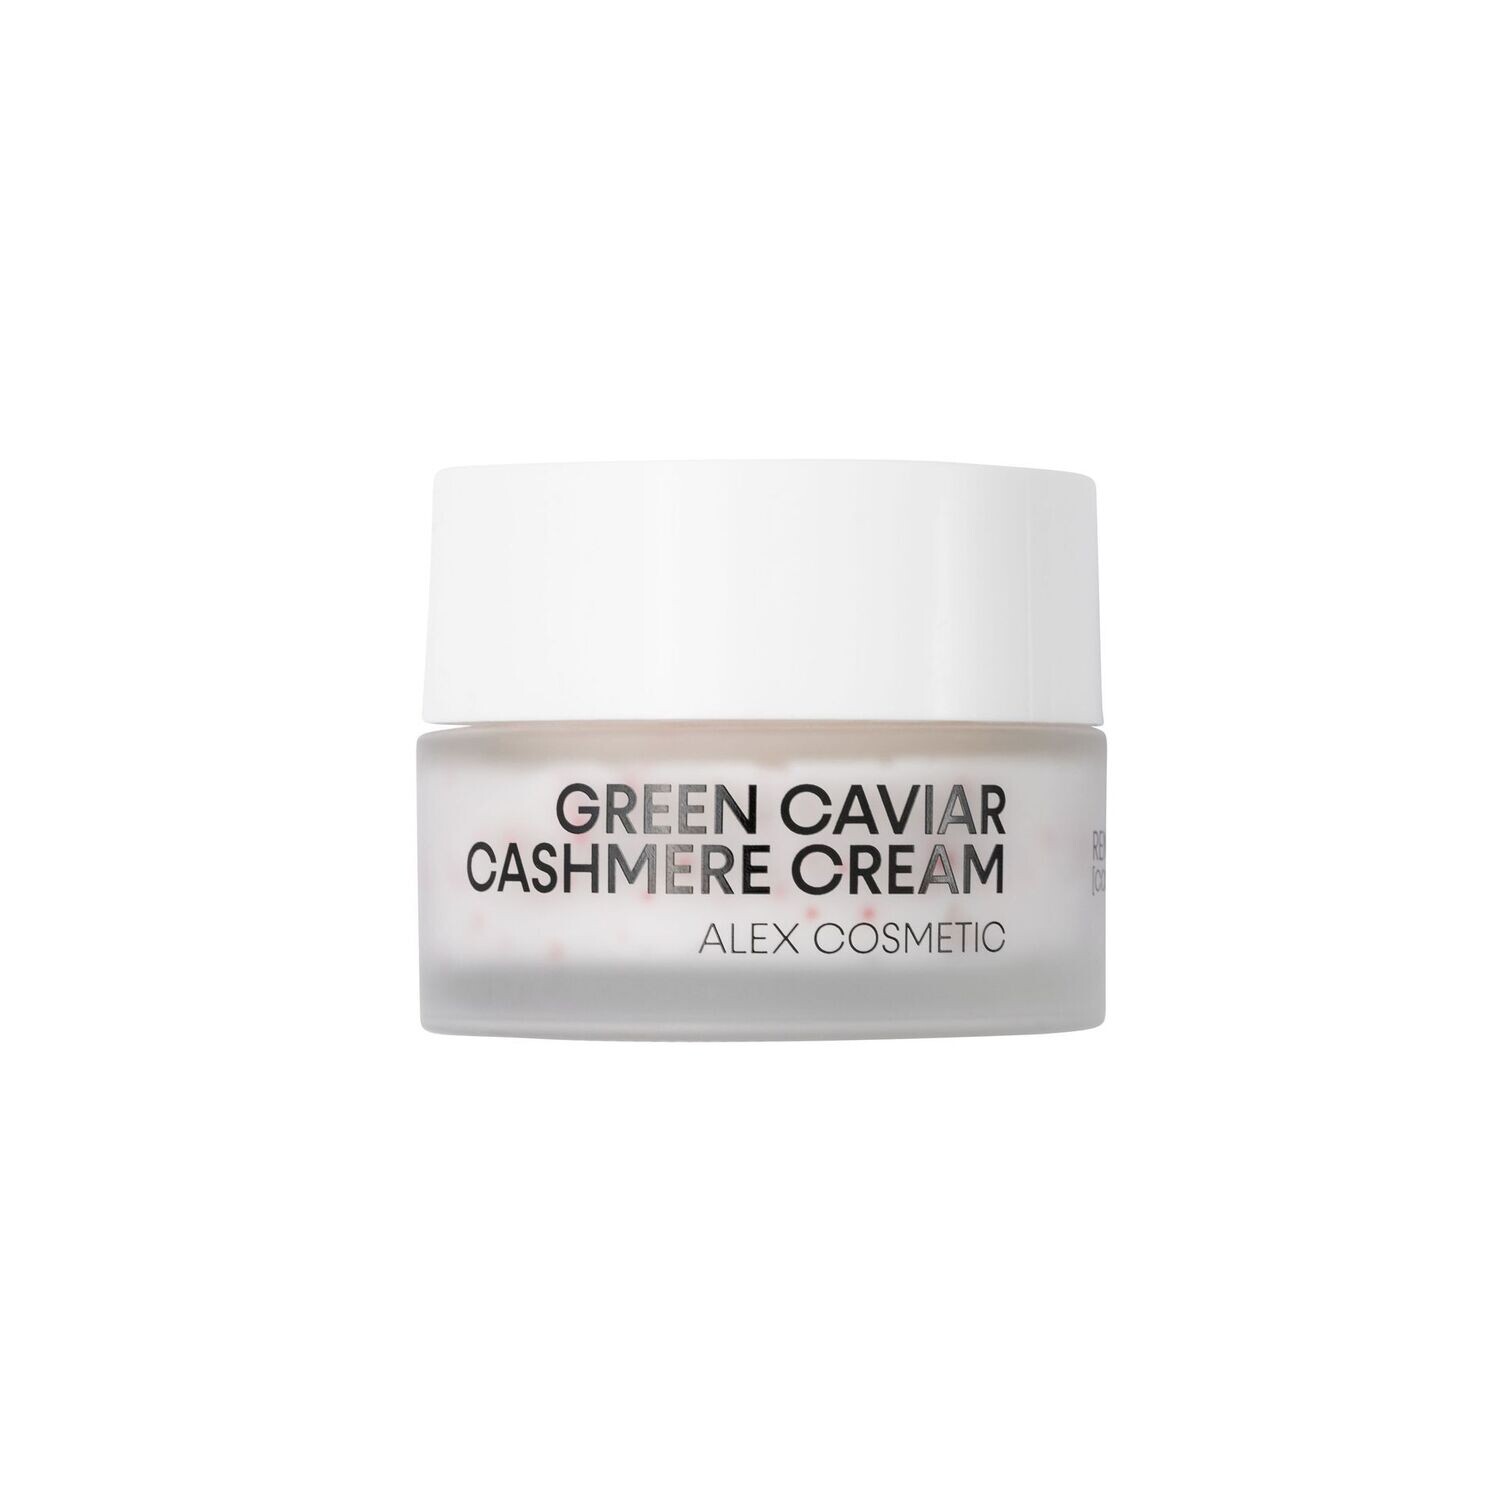 Green Caviar Cashmere Cream
24h Creme mit Algenkaviar und Koenzym Q10 für ein kaschmirweiches Hautgefühl